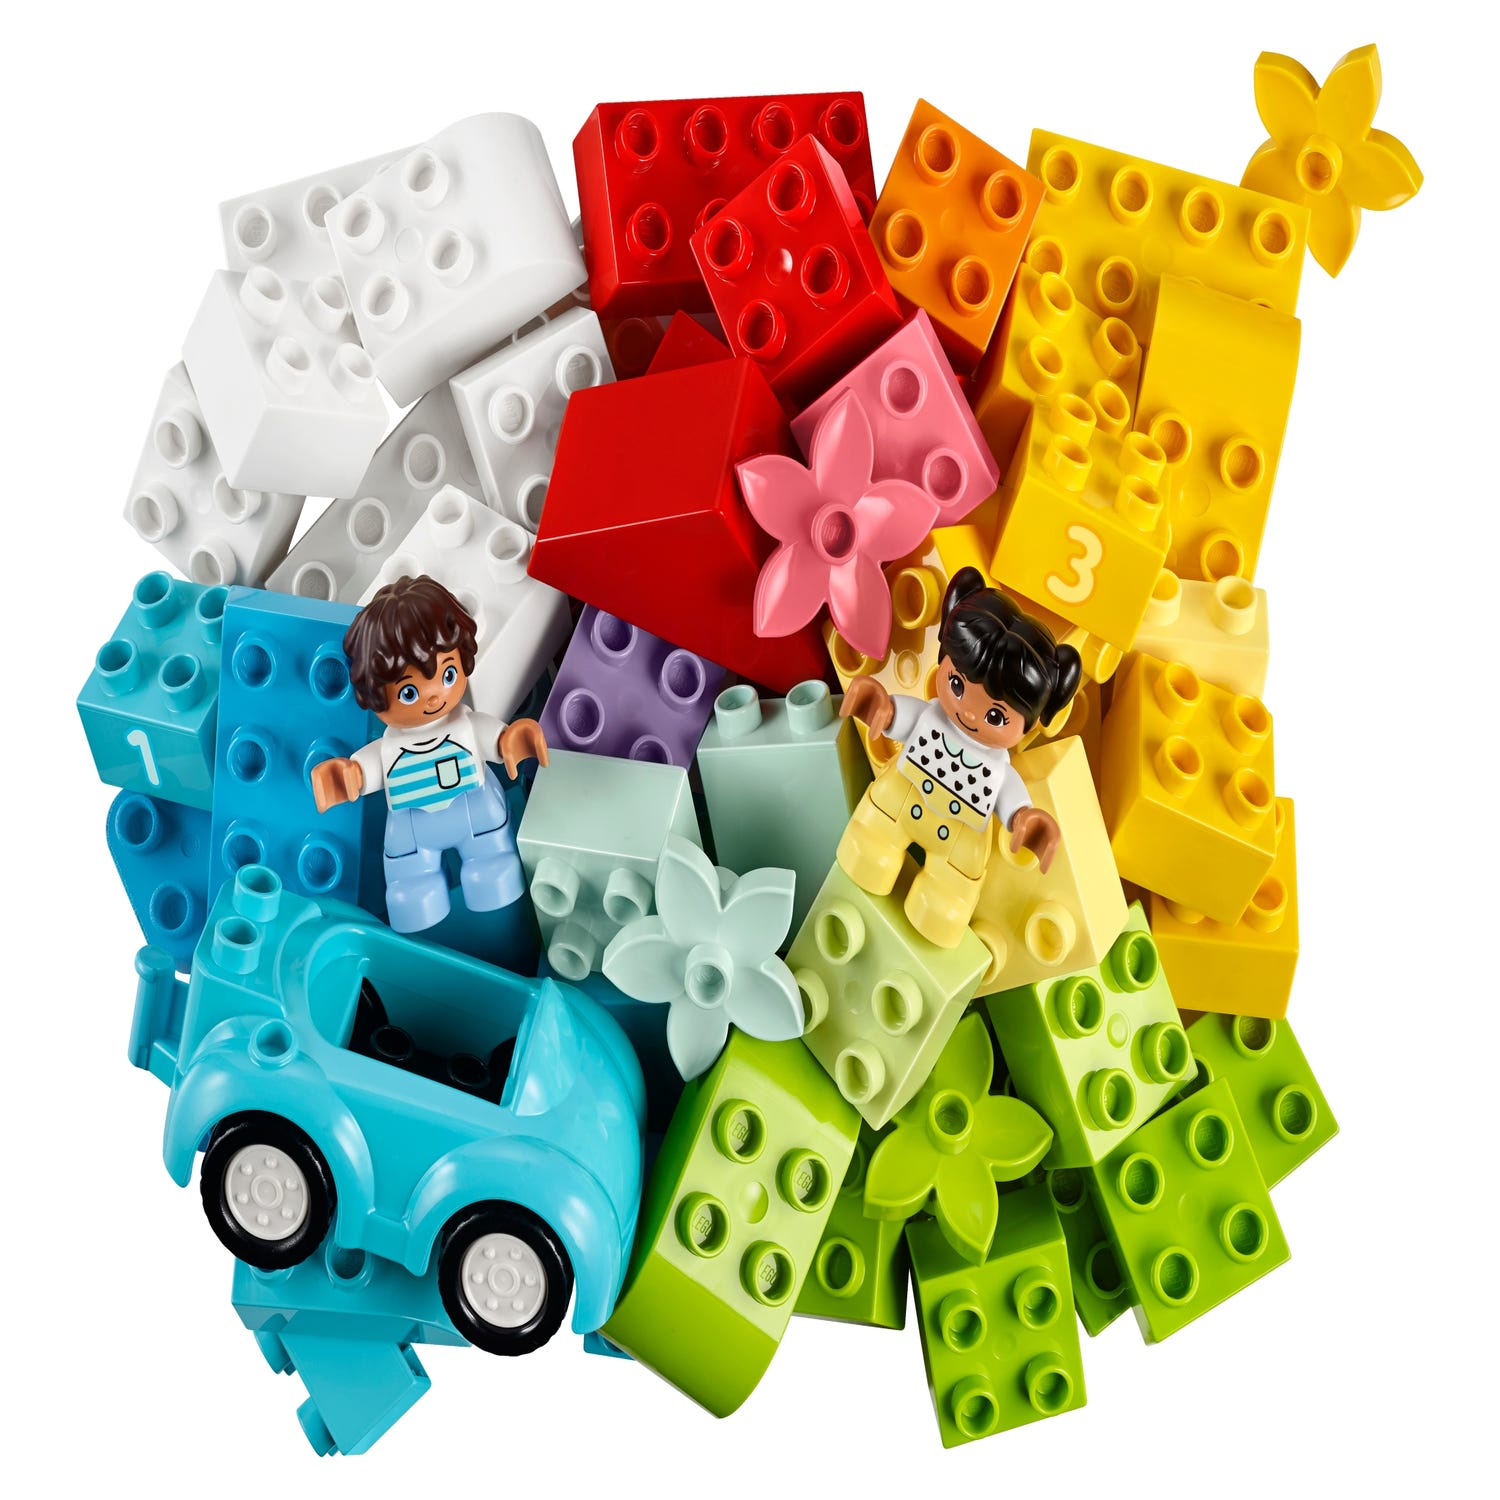 LEGO DUPLO La boîte de briques - 10913